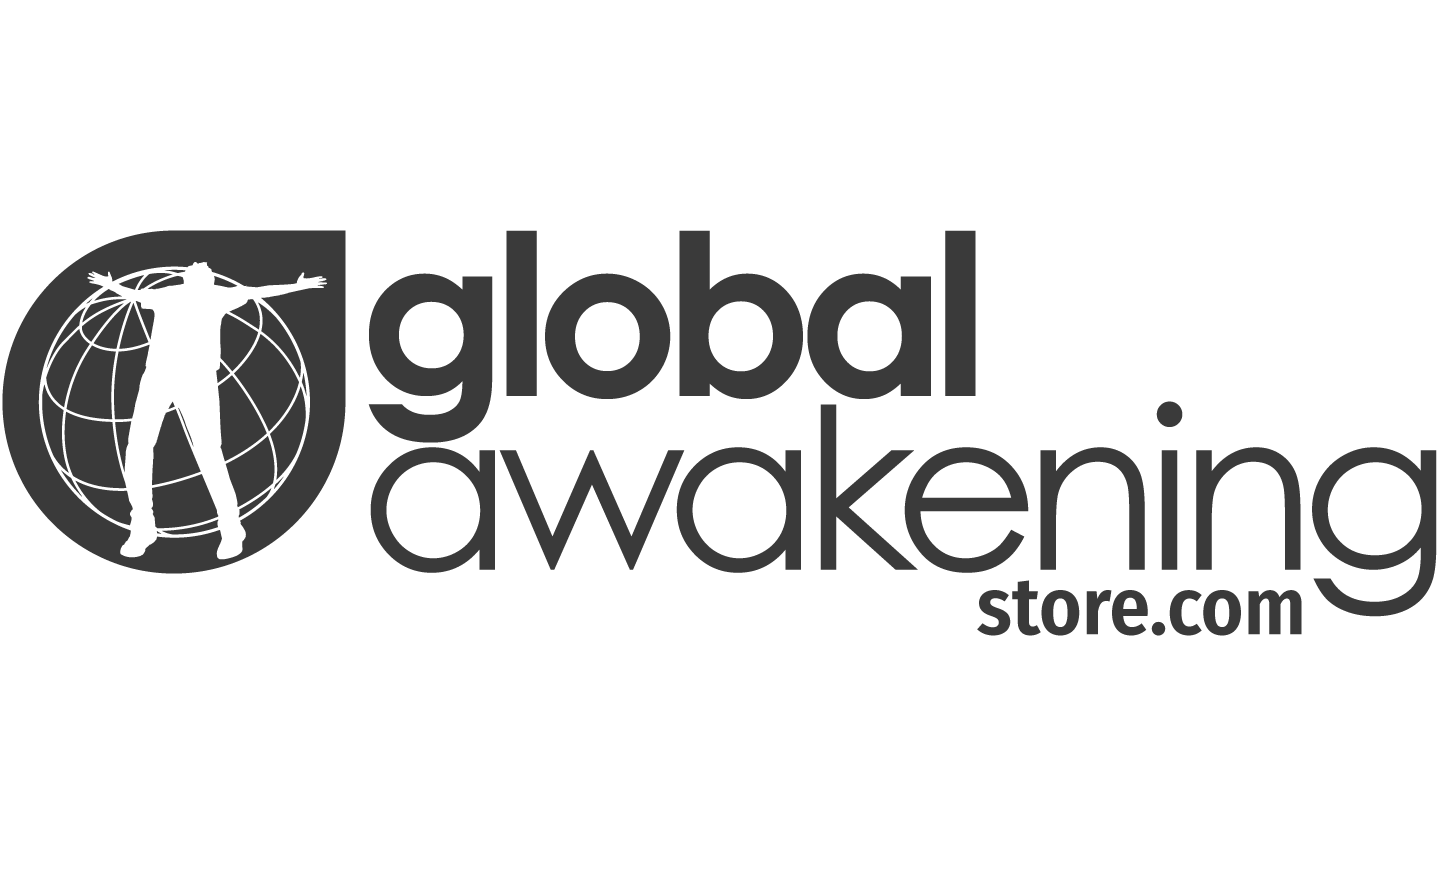 Awakening Logo - Revival CD by Gateway Worship Awakening Online Store